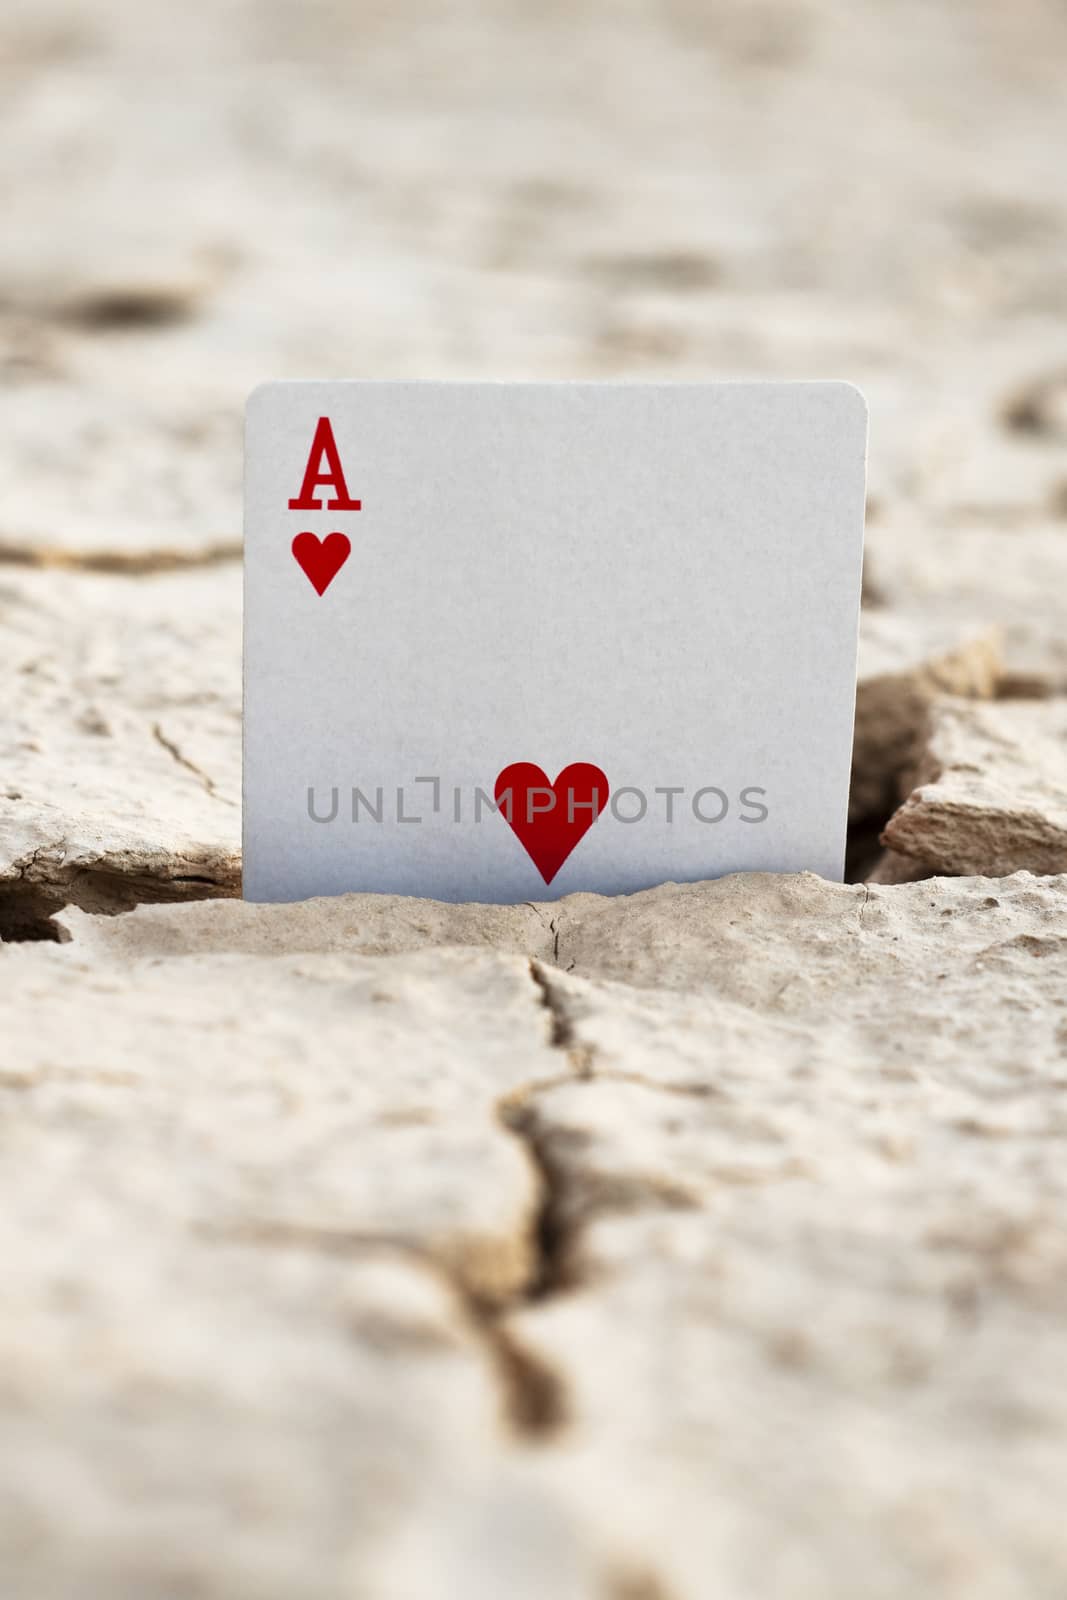 desert card by orcearo